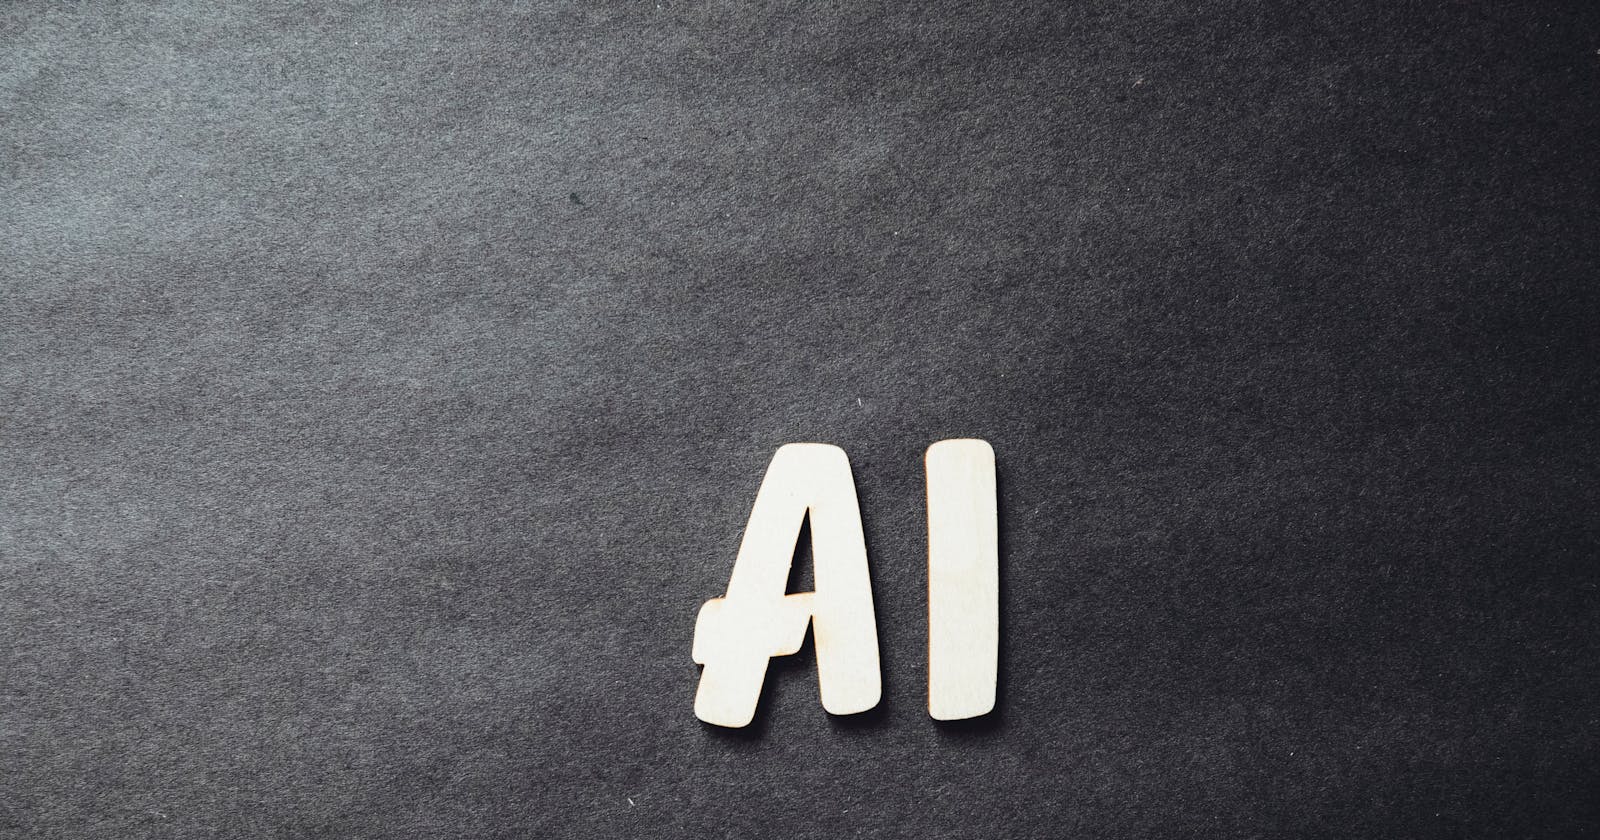 How AI will shape the future?